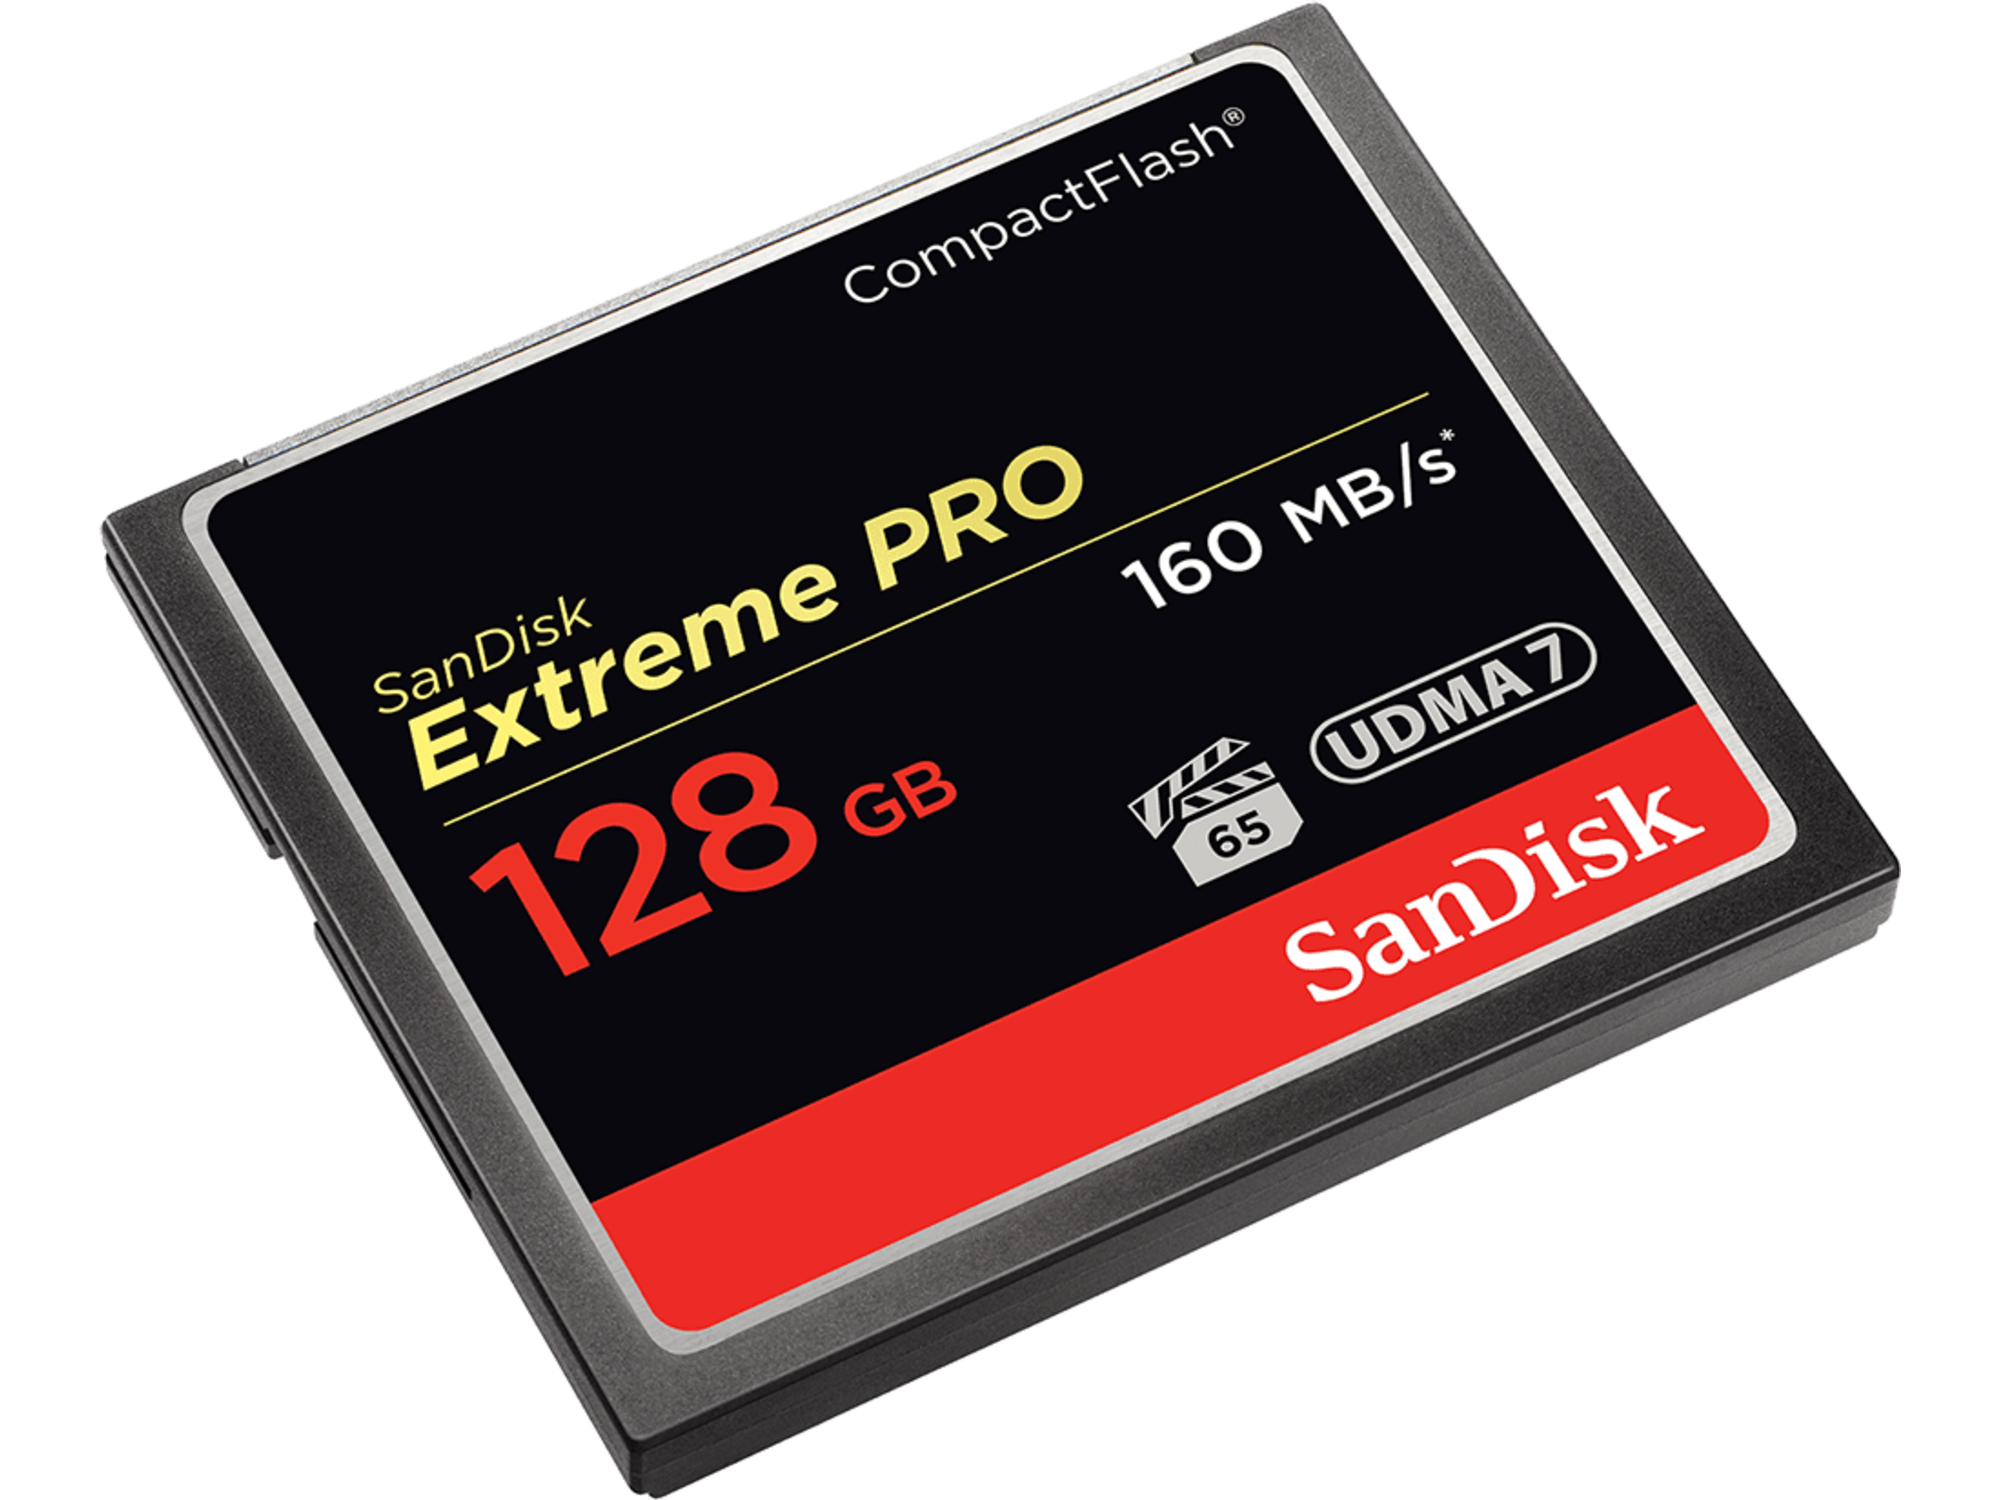 SanDisk Extreme PRO CF 160MB/s 128 GB VPG 65, UDMA 7